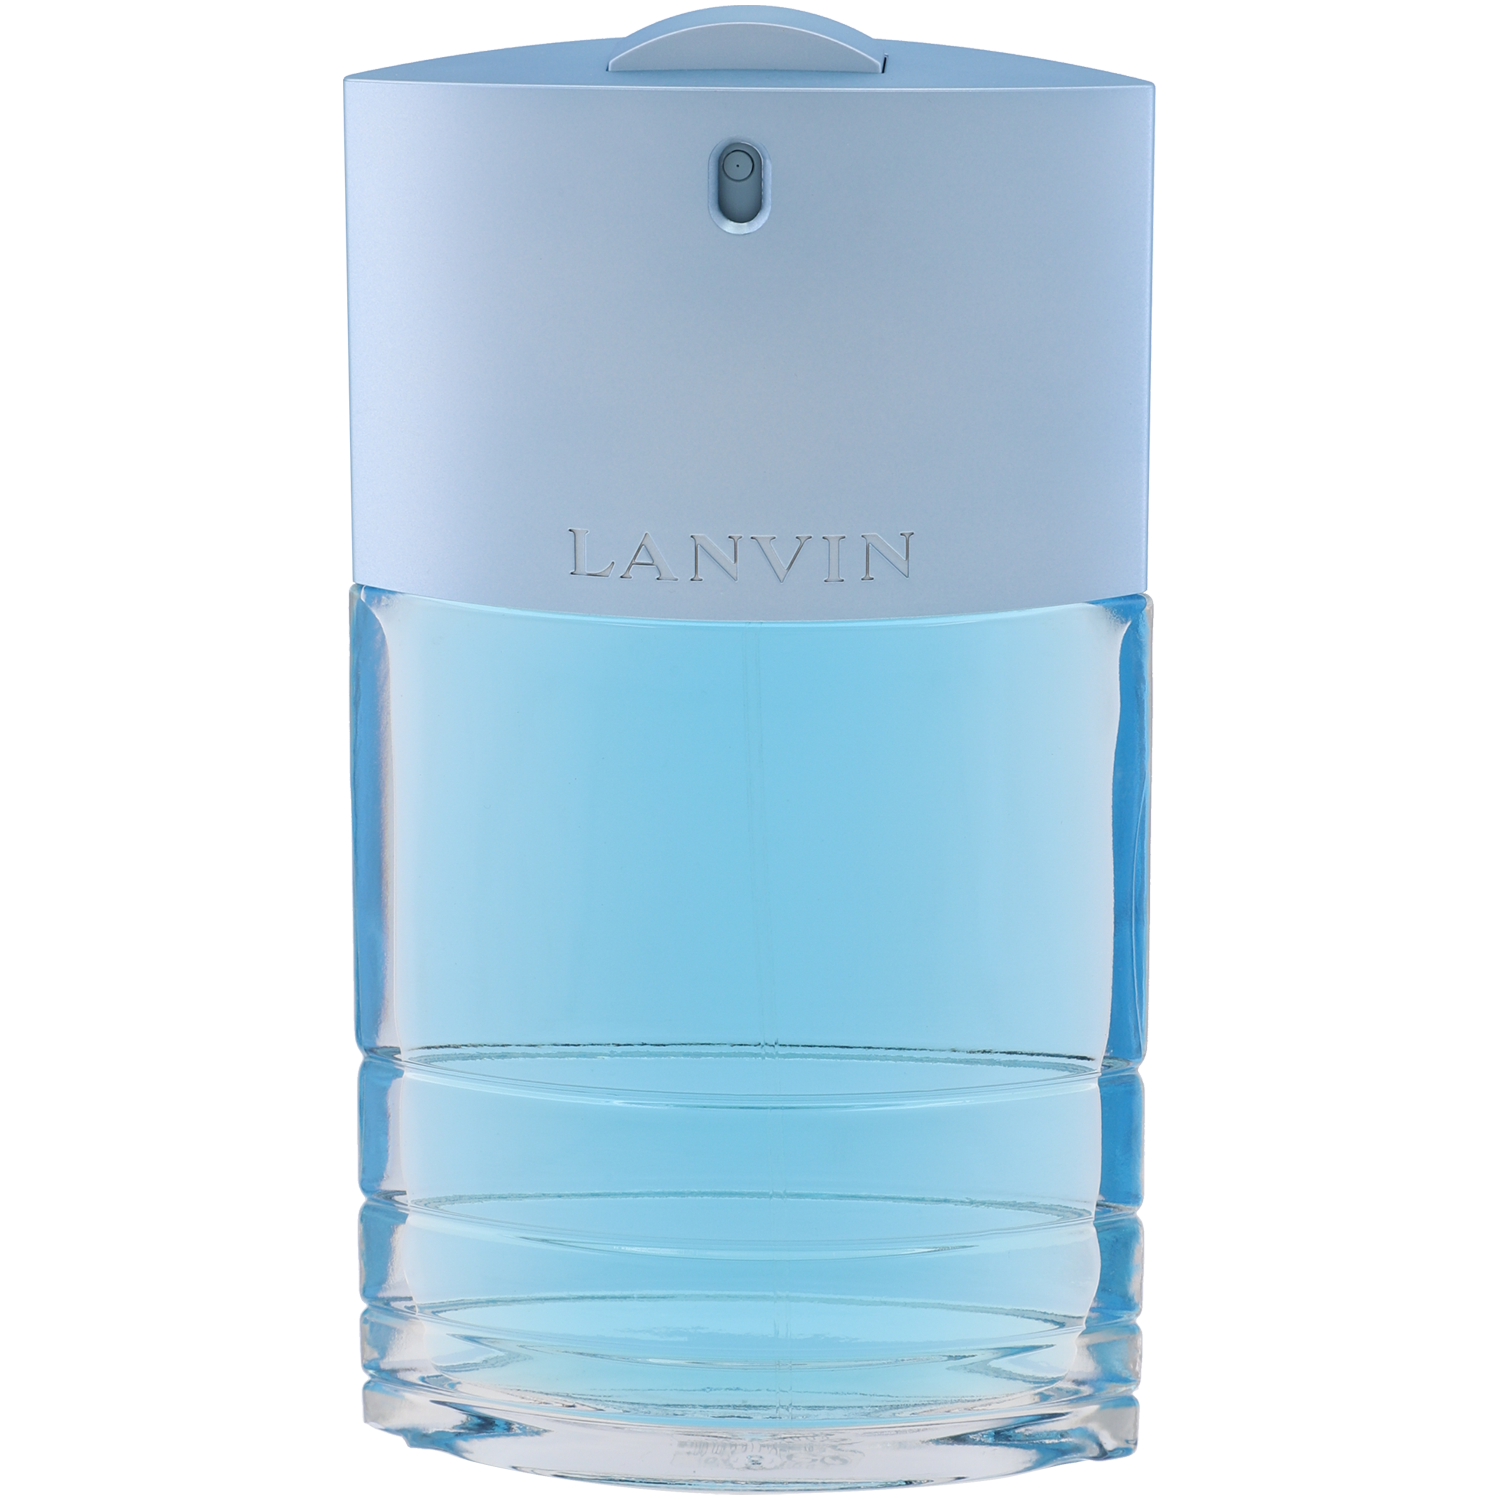 Lanvin Oxygene Homme туалетная вода для мужчин, 100 мл